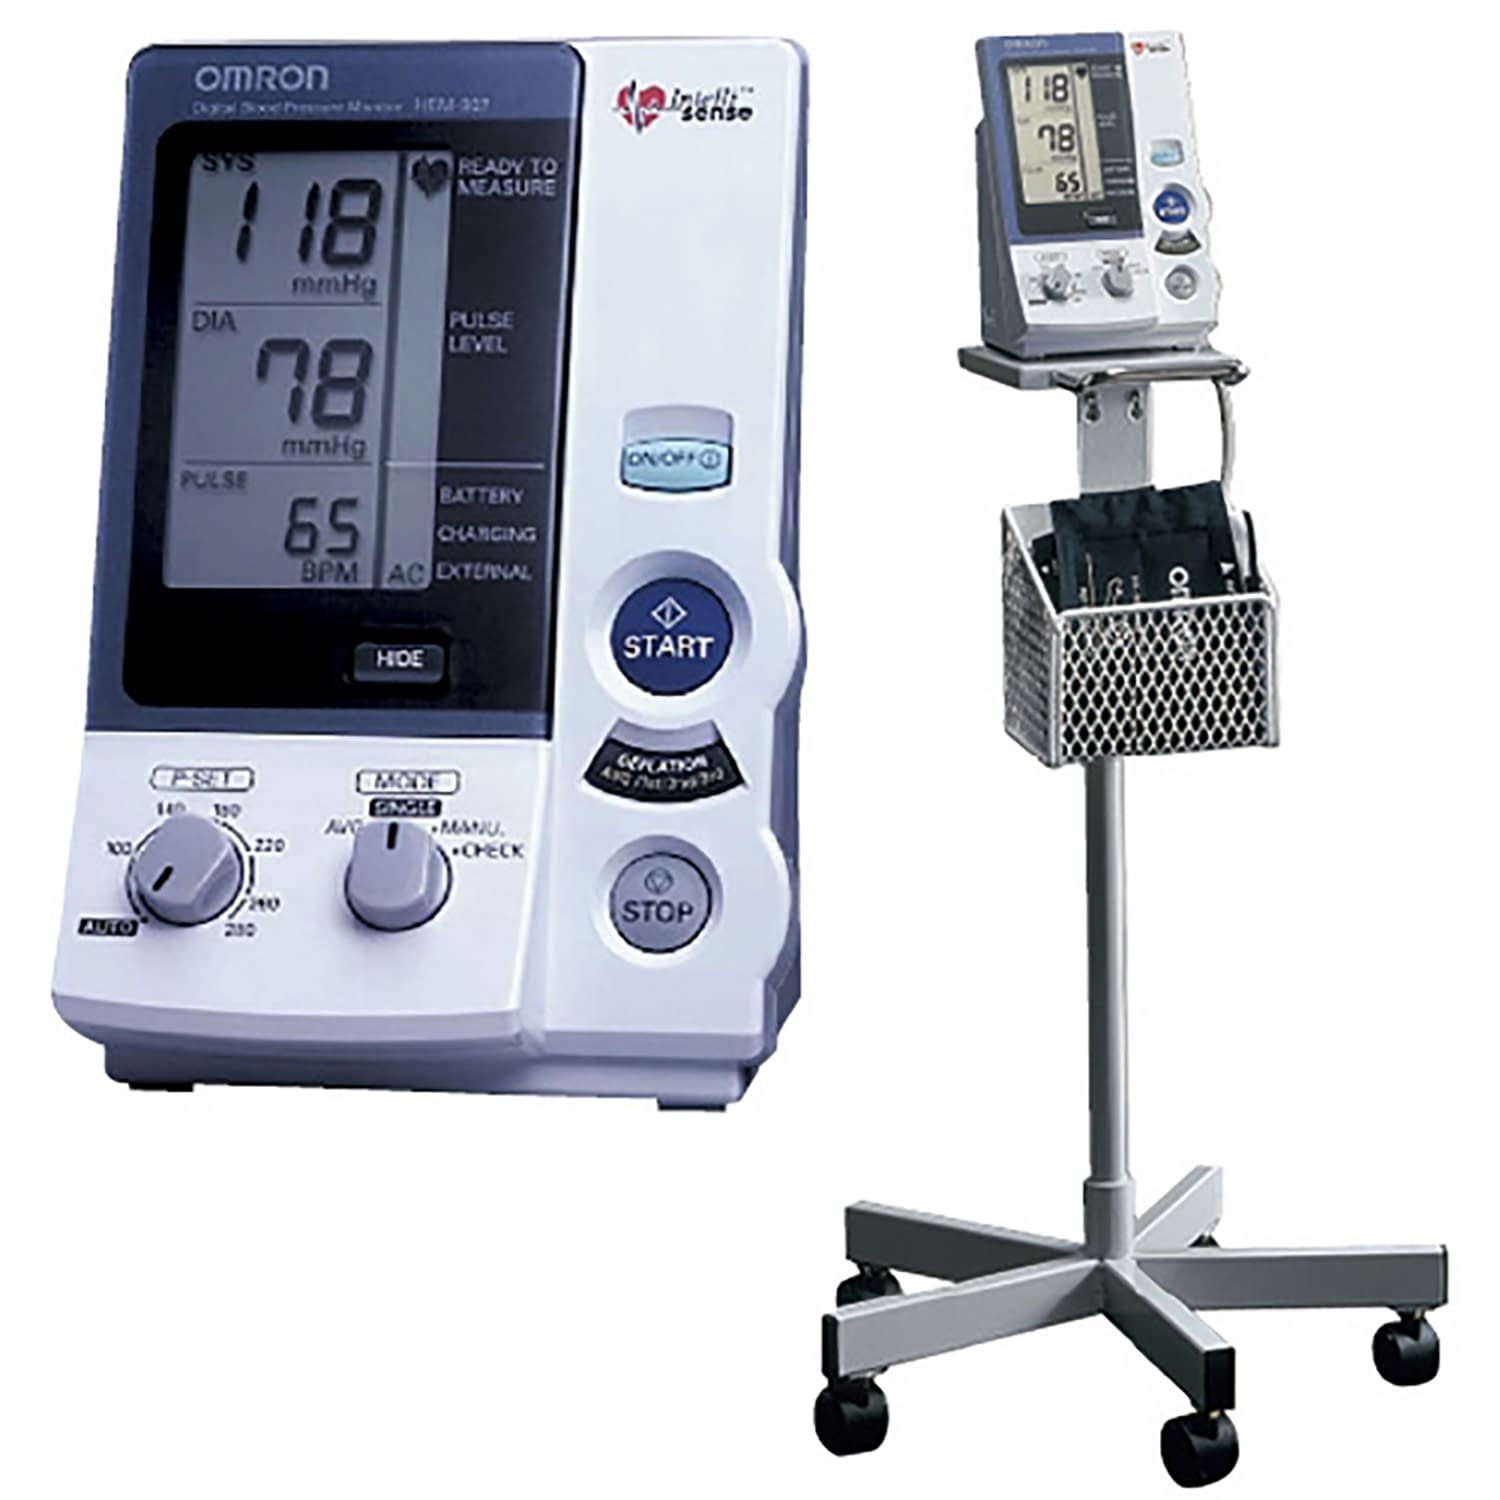 血圧計用カフ／ブラダーセット(M) HEM-907-CR19HEM-907-CR19(02-3047-13)【フクダコーリン】(販売単位:1)